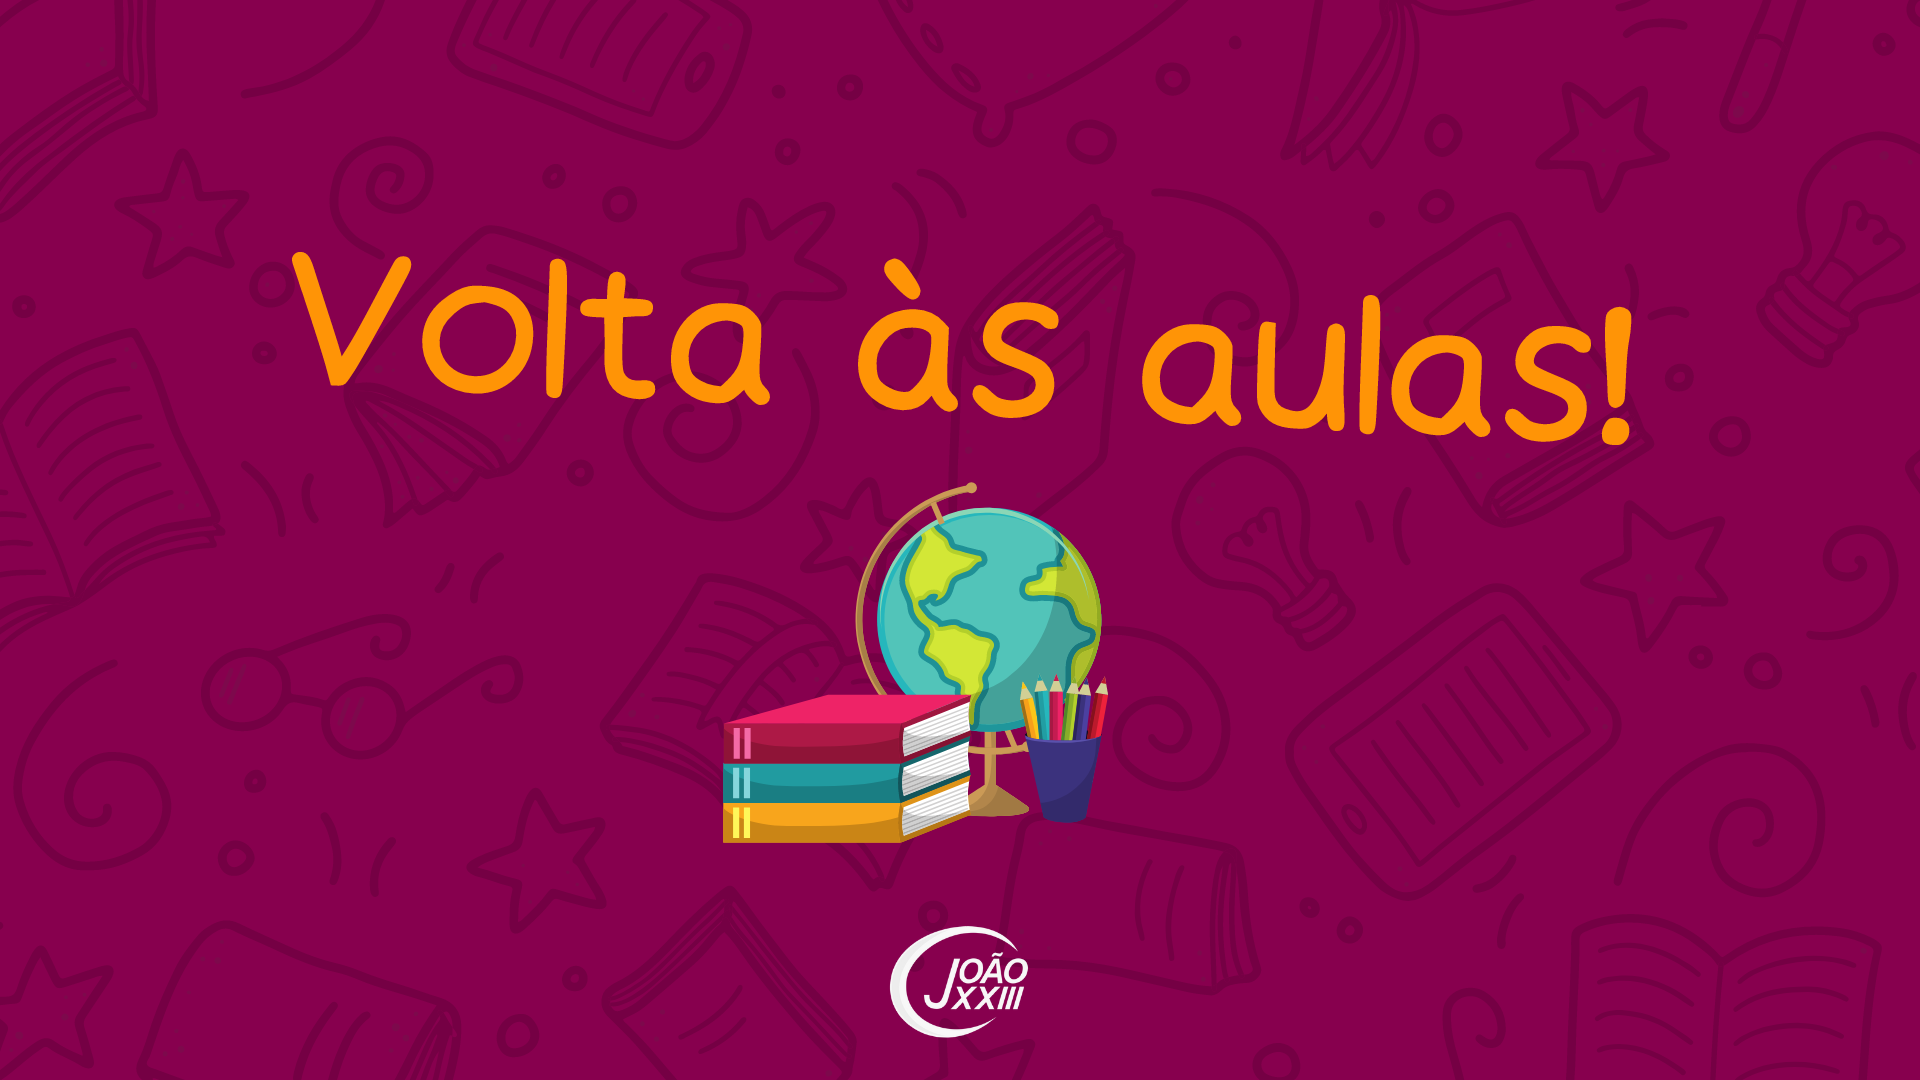 Read more about the article Volta às aulas!